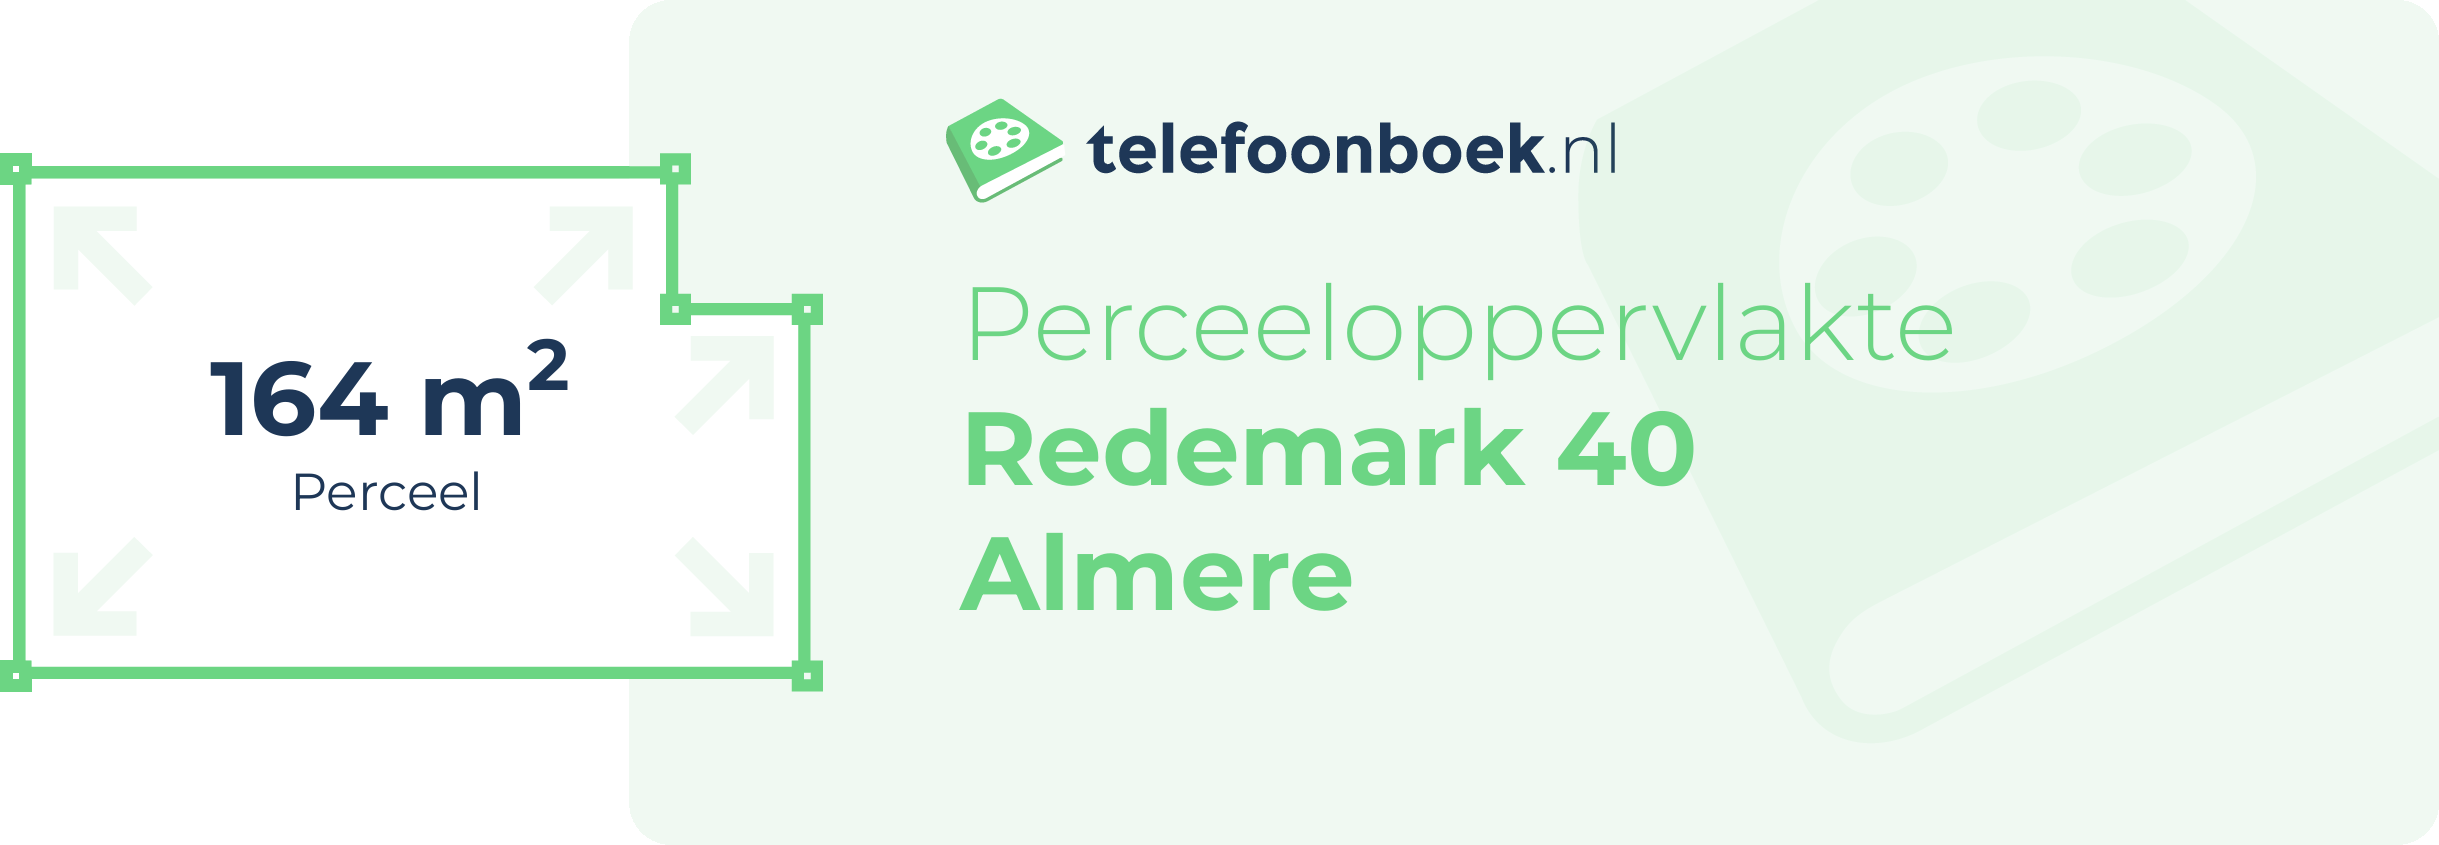 Perceeloppervlakte Redemark 40 Almere